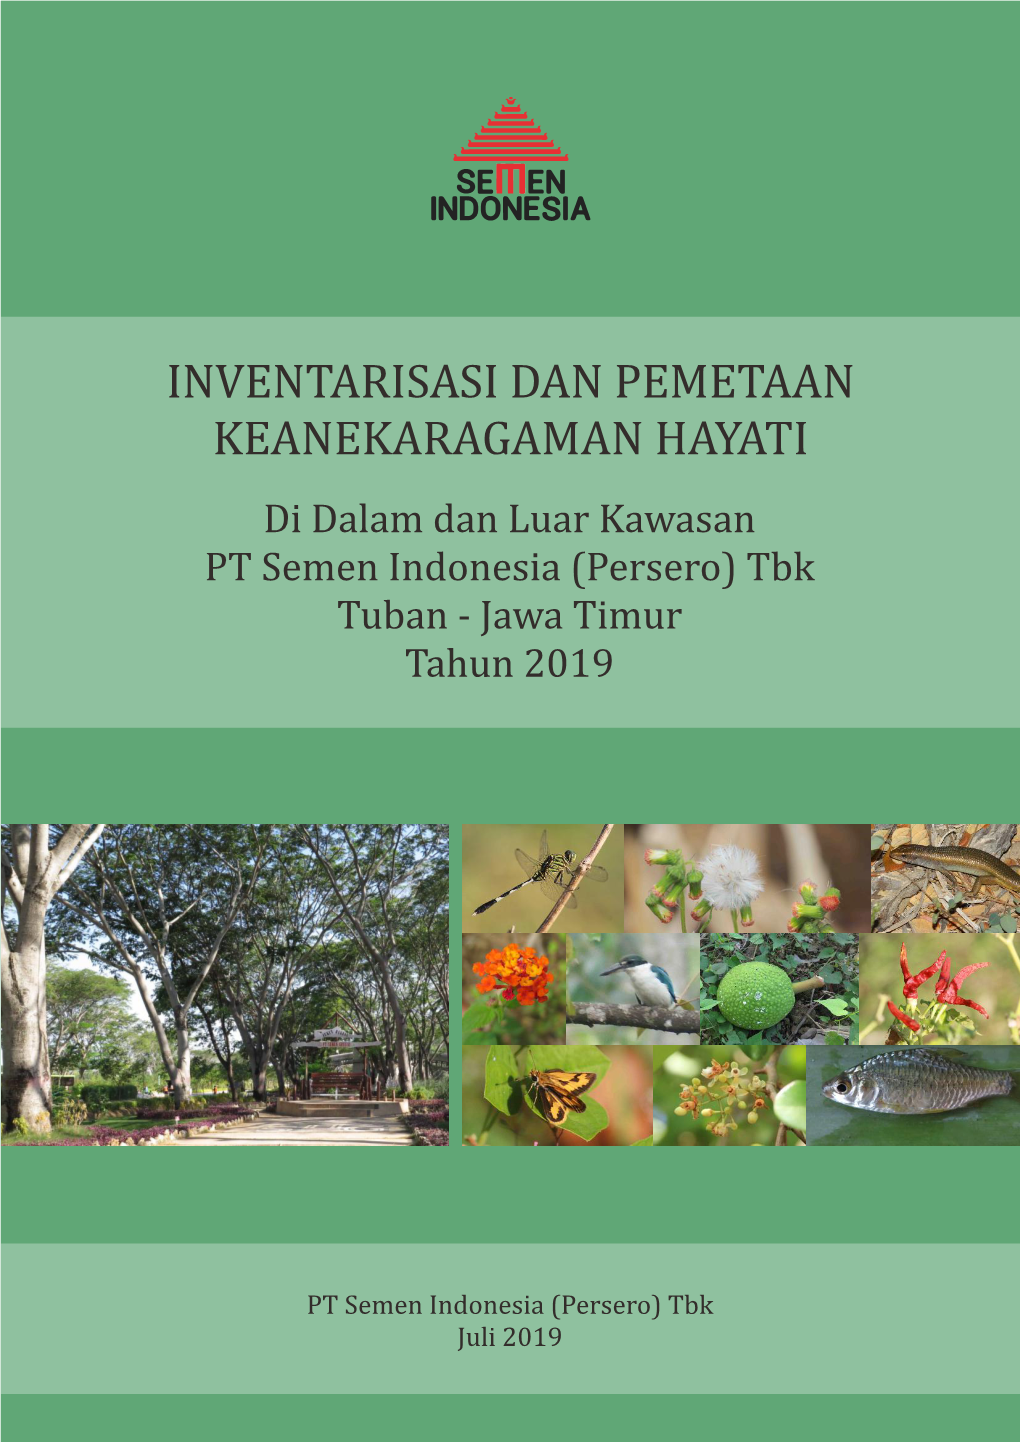 INVENTARISASI DAN PEMETAAN KEANEKARAGAMAN HAYATI Di Dalam Dan Luar Kawasan PT Semen Indonesia (Persero) Tbk Tuban - Jawa Timur Tahun 2019